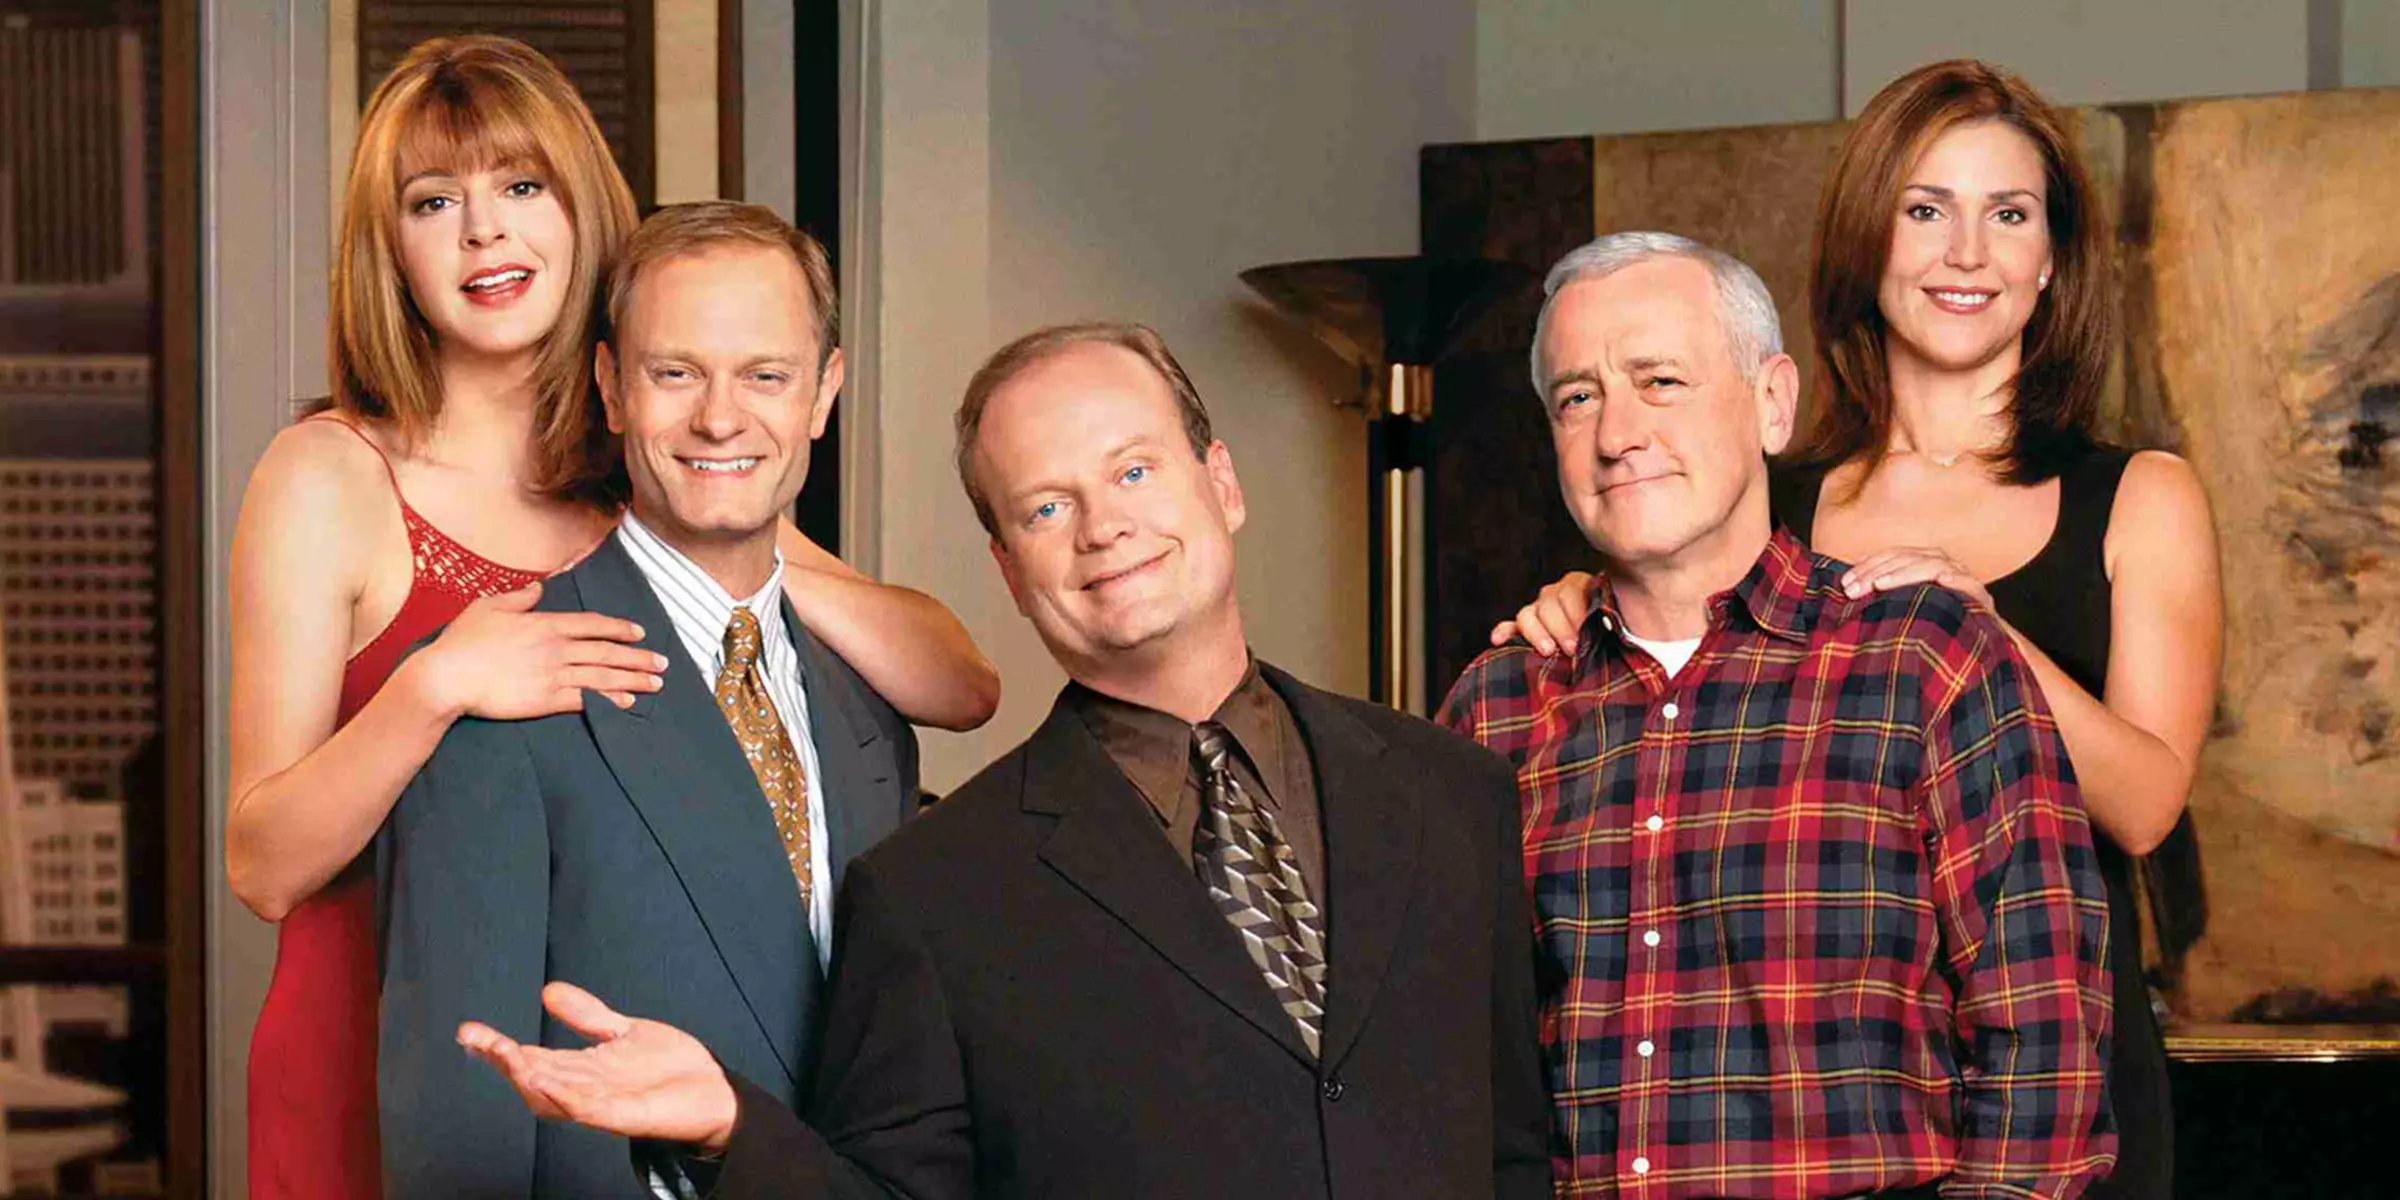 Frasier ran for over 11 seasons (